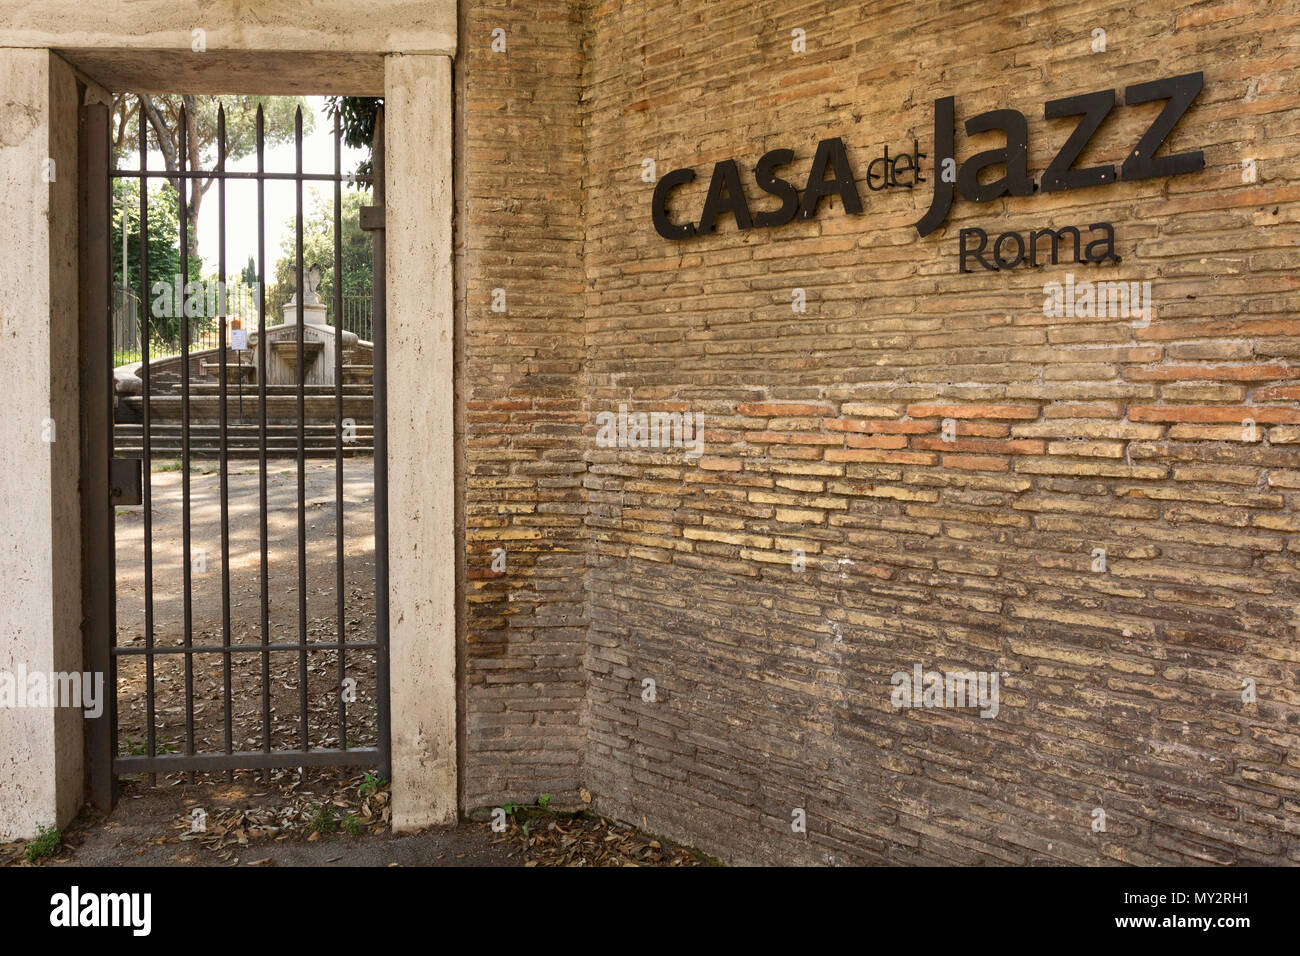 Casa del Jazz, Viale di Porta Ardeatina, Rome Stock Photo